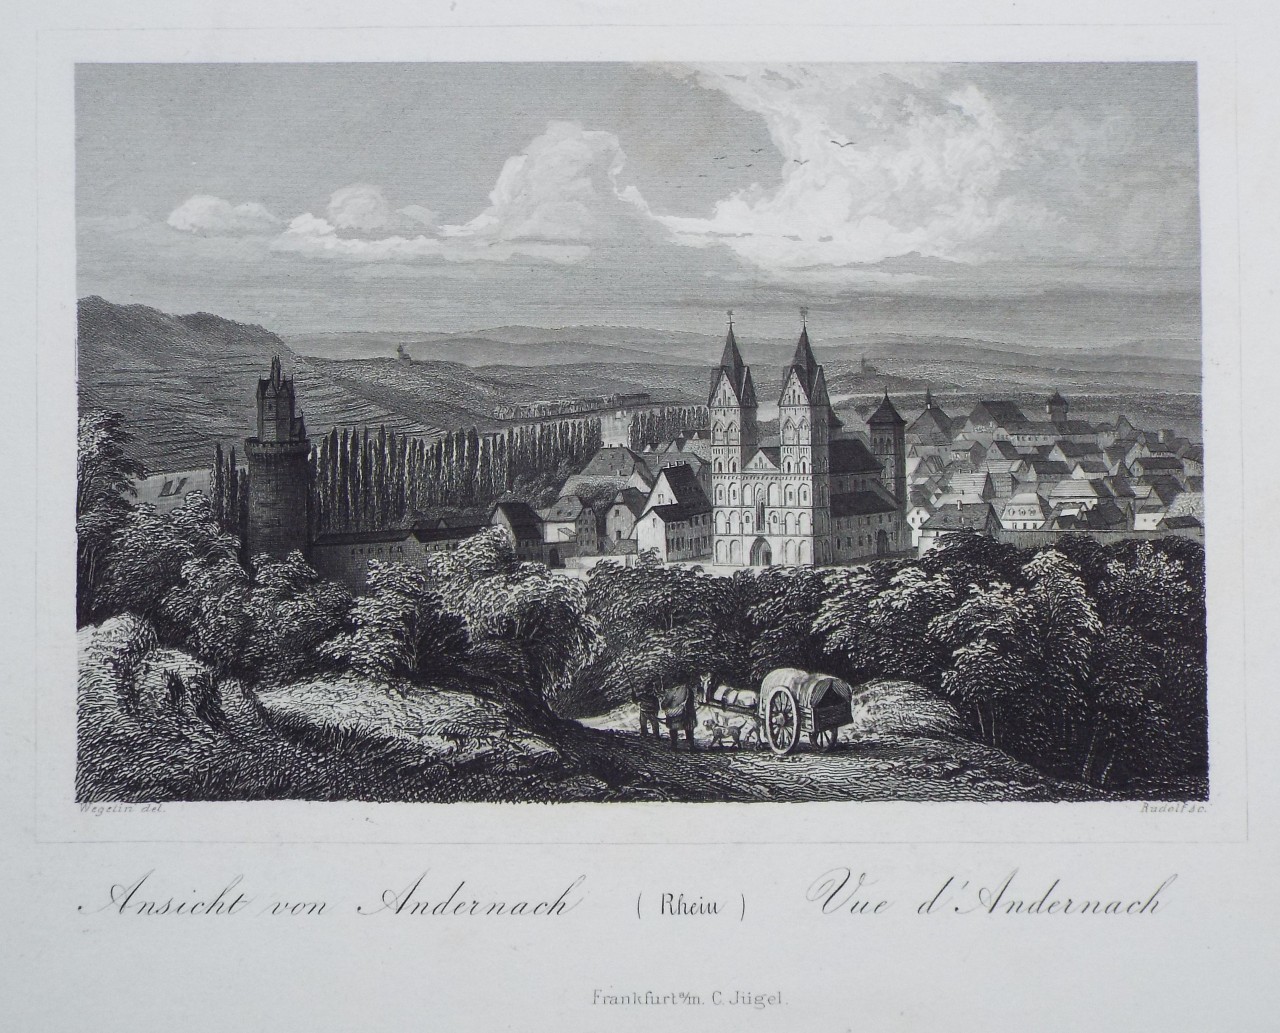 Print - Ansicht von Andernach (Rhein) Vue d' Andernach - 